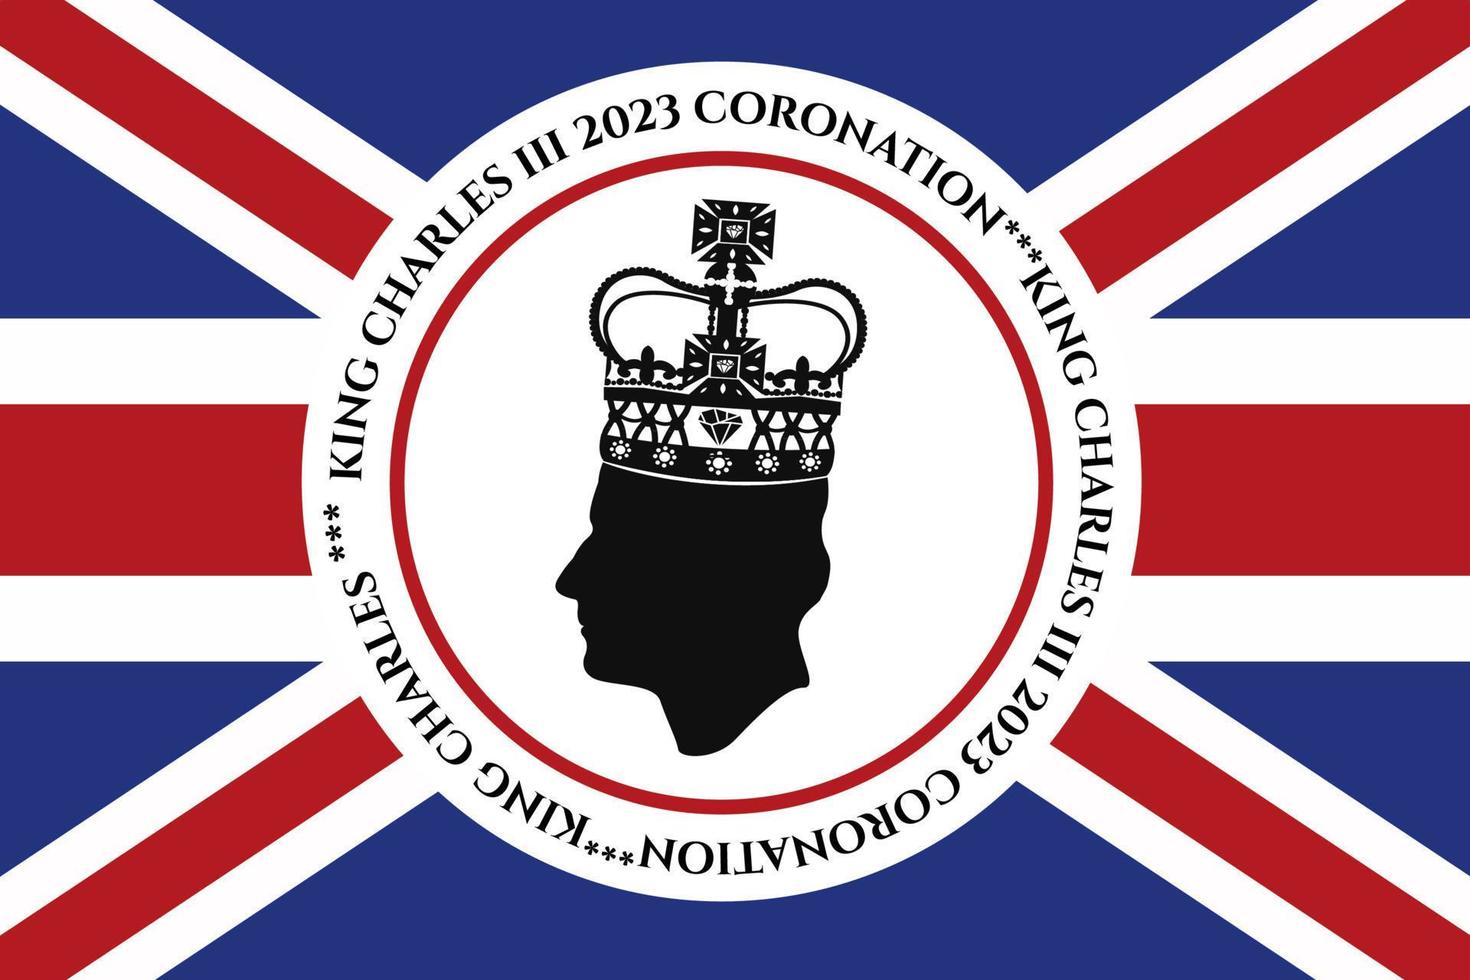 Londres, Royaume-Uni, 6 mai. 2023. roi charles iii couronnement charles de galles devient roi d'angleterre. poteau blanc, vecteur